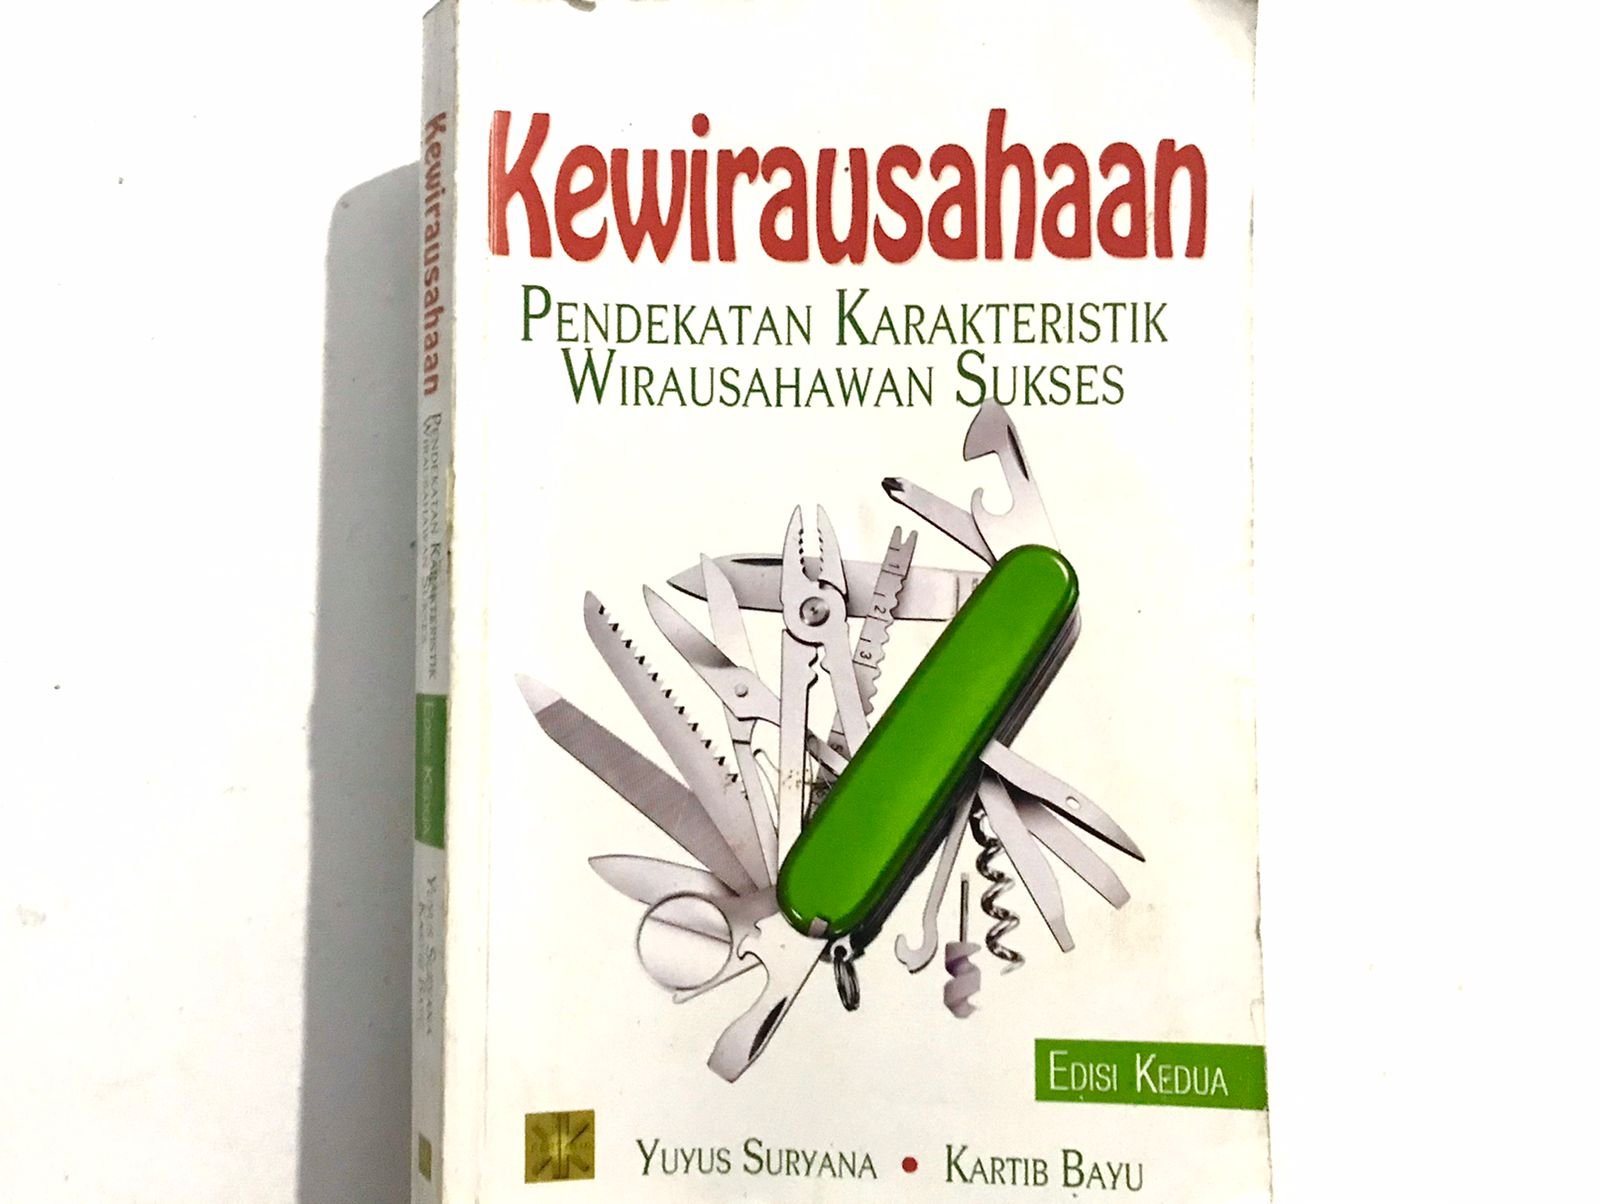 Buku Pendekatan Kewirausahaan Pendekatan Karakteristik Wirausahawan Sukses. (Foto: Sumaya Nursyahidah).